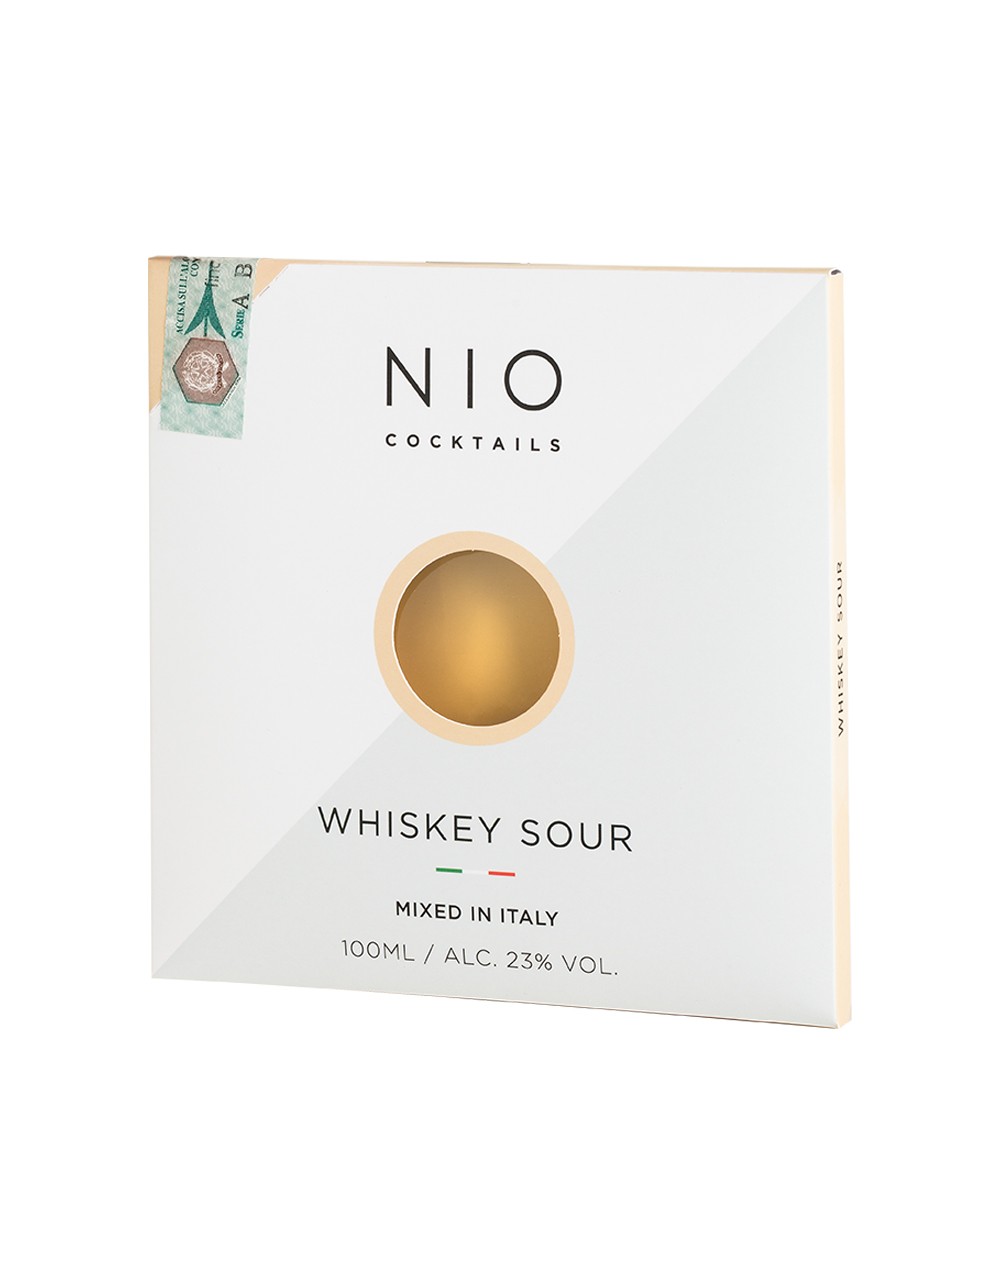 NIO COCKTAILS - Whiskey Sour